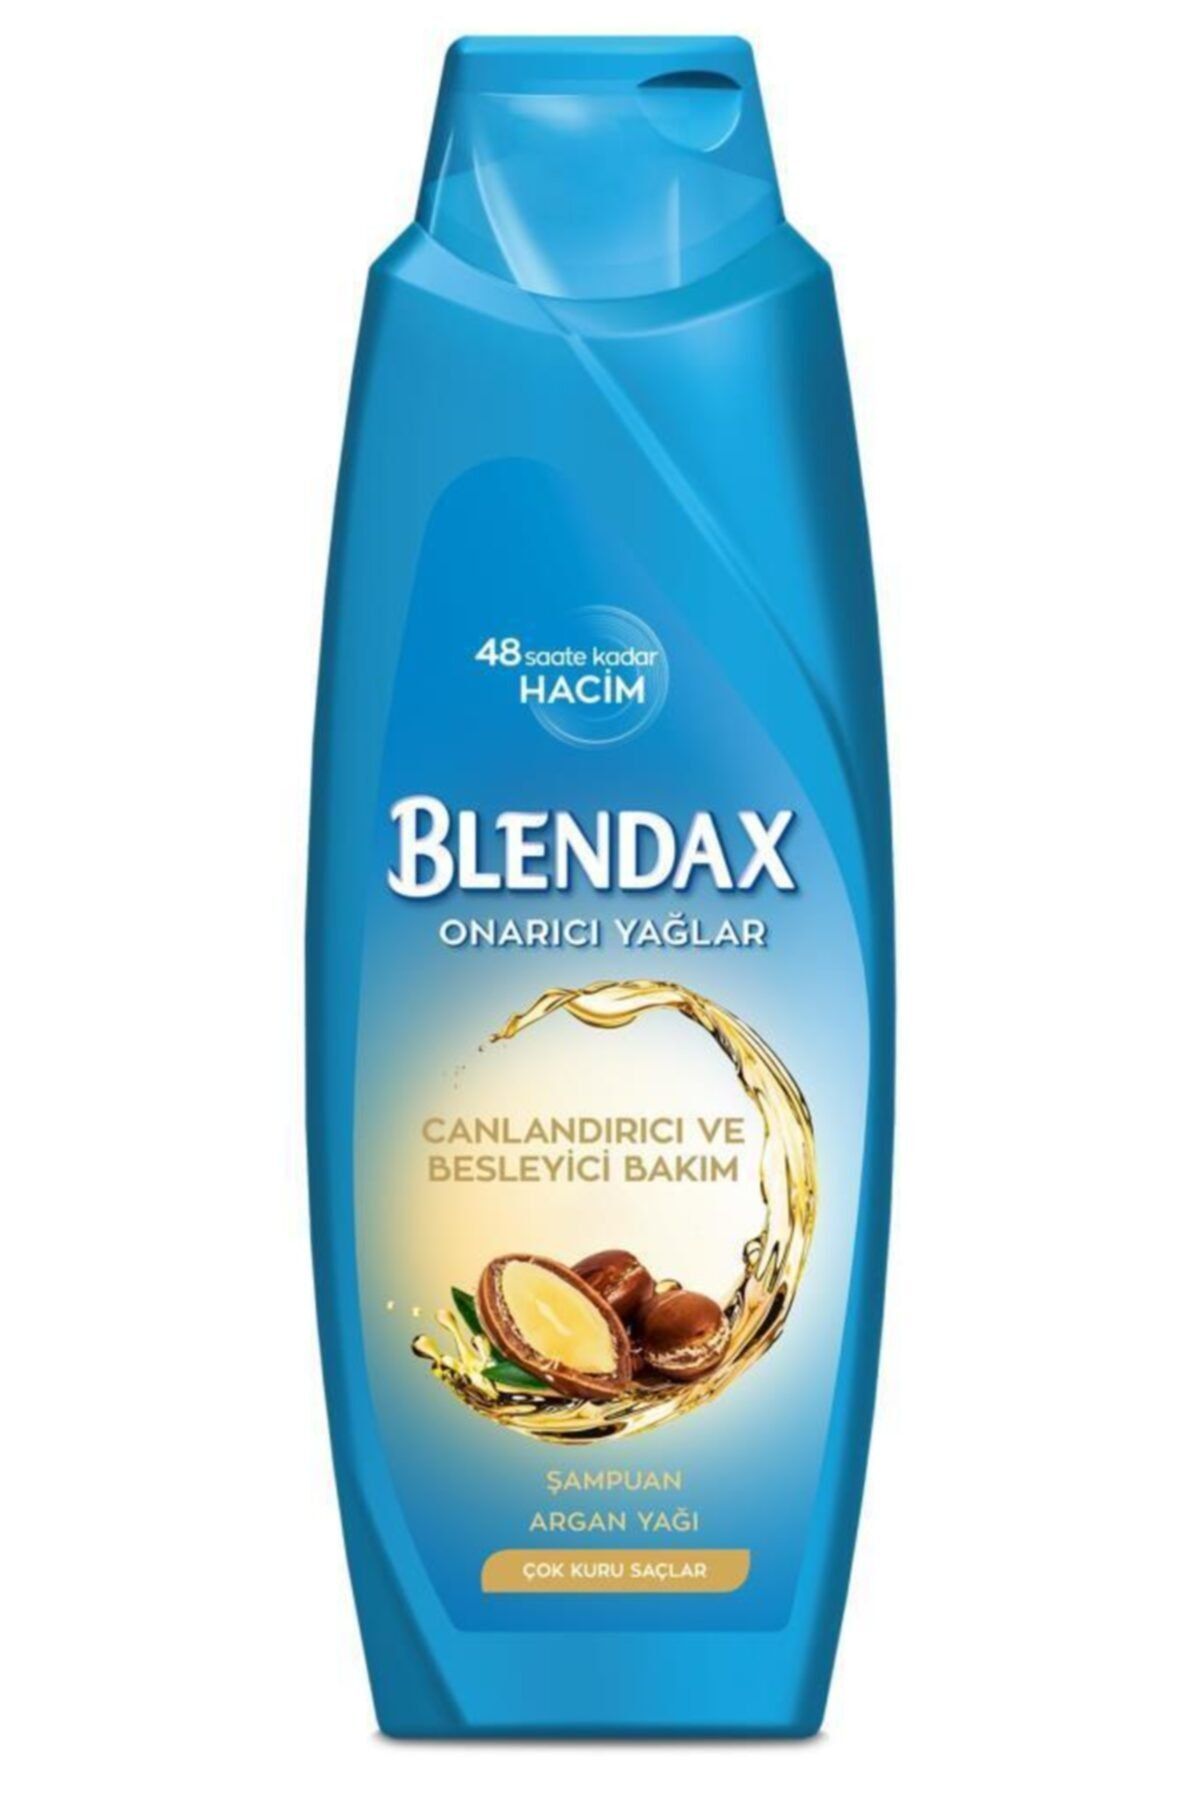 Blendax Canlandırıcı Ve Besleyici Bakım- Onarıcı Yağlar Argan Yağı Şampuan 500 ml